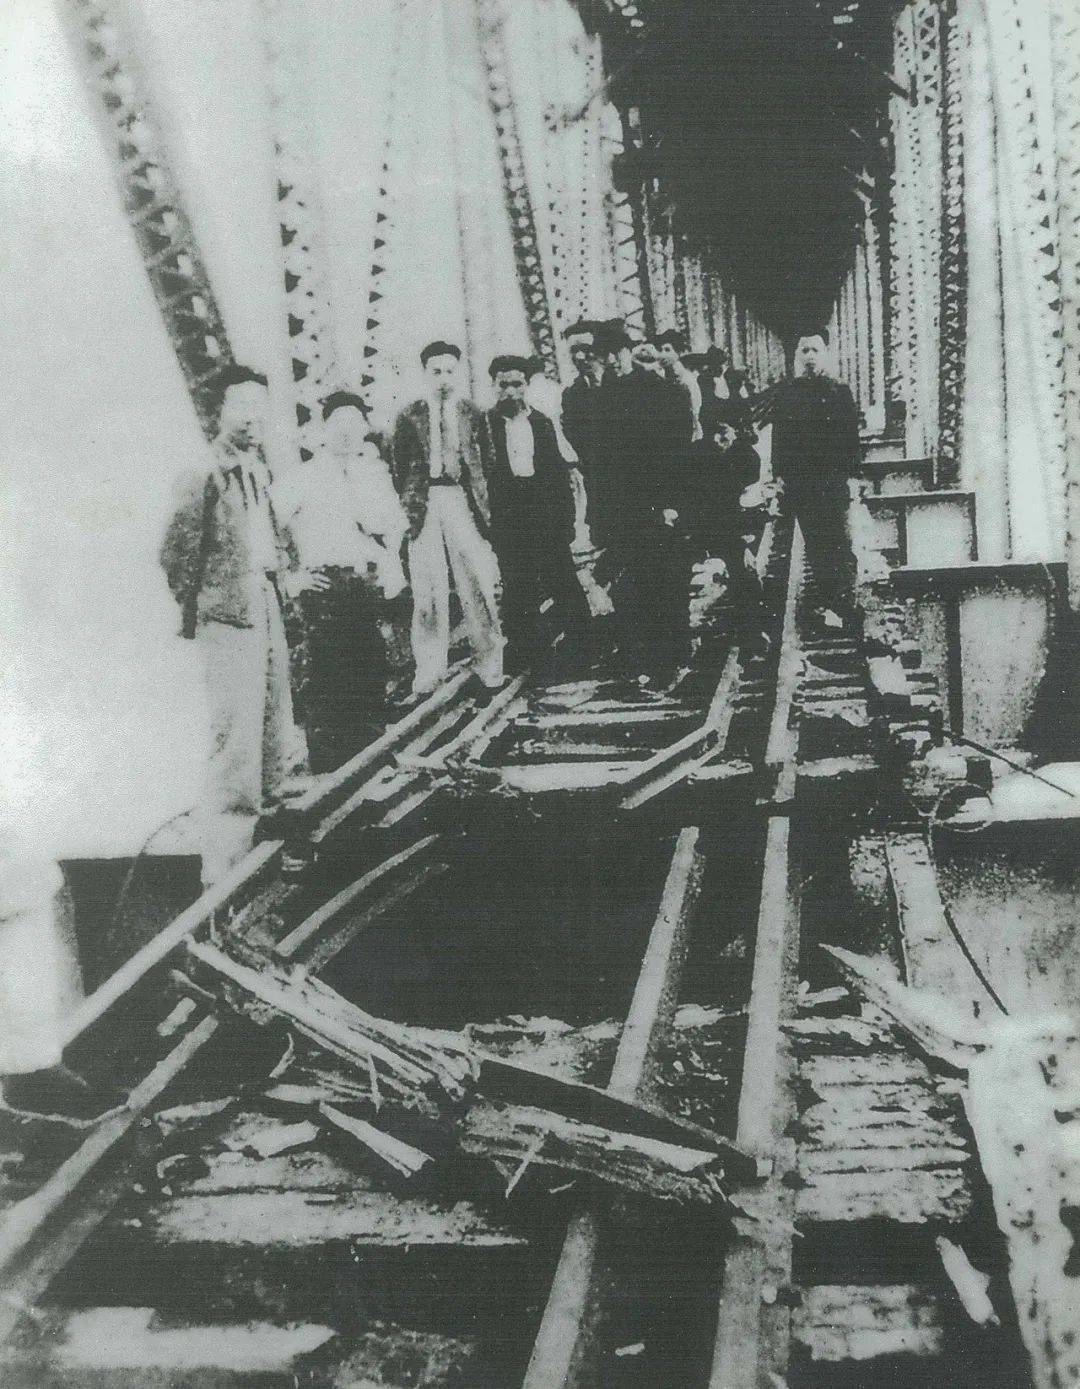 跨江大桥爆炸案图片